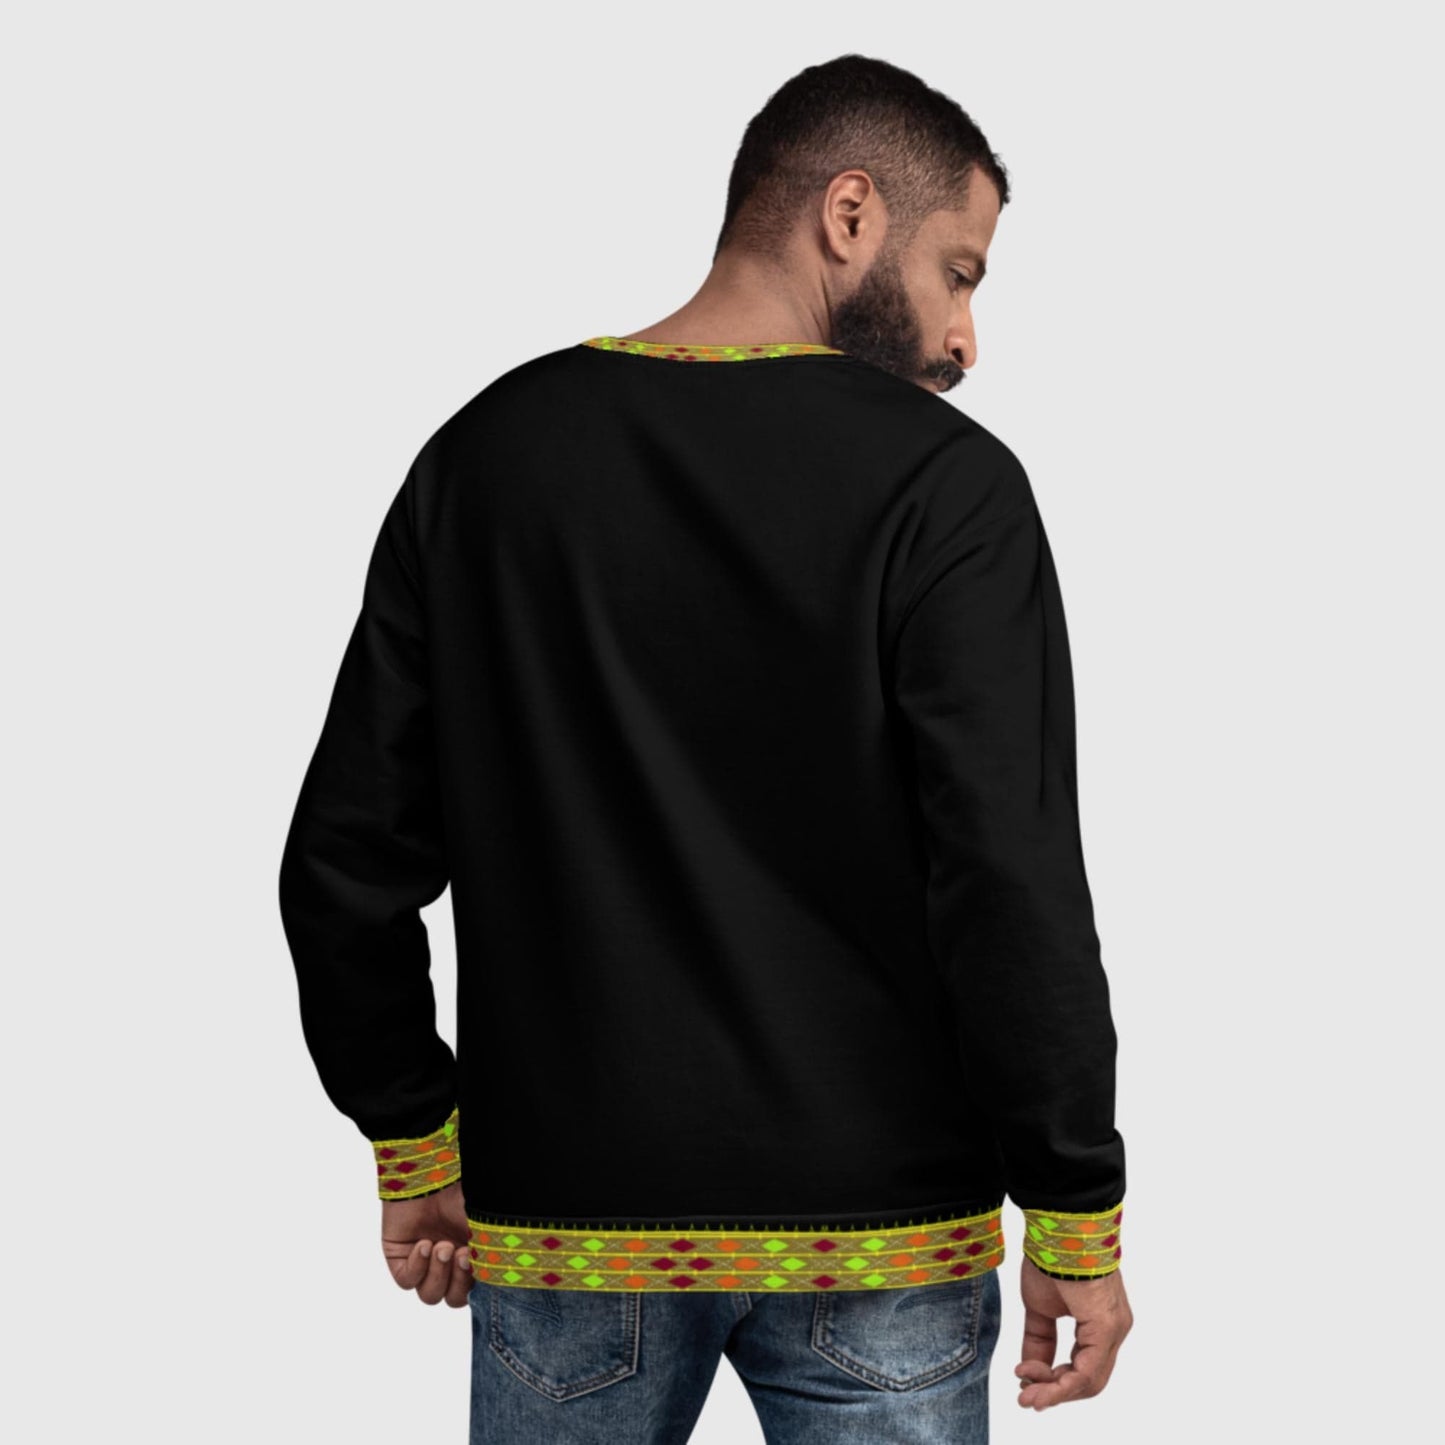 Habesha Style Unisex Sweatshirt Black